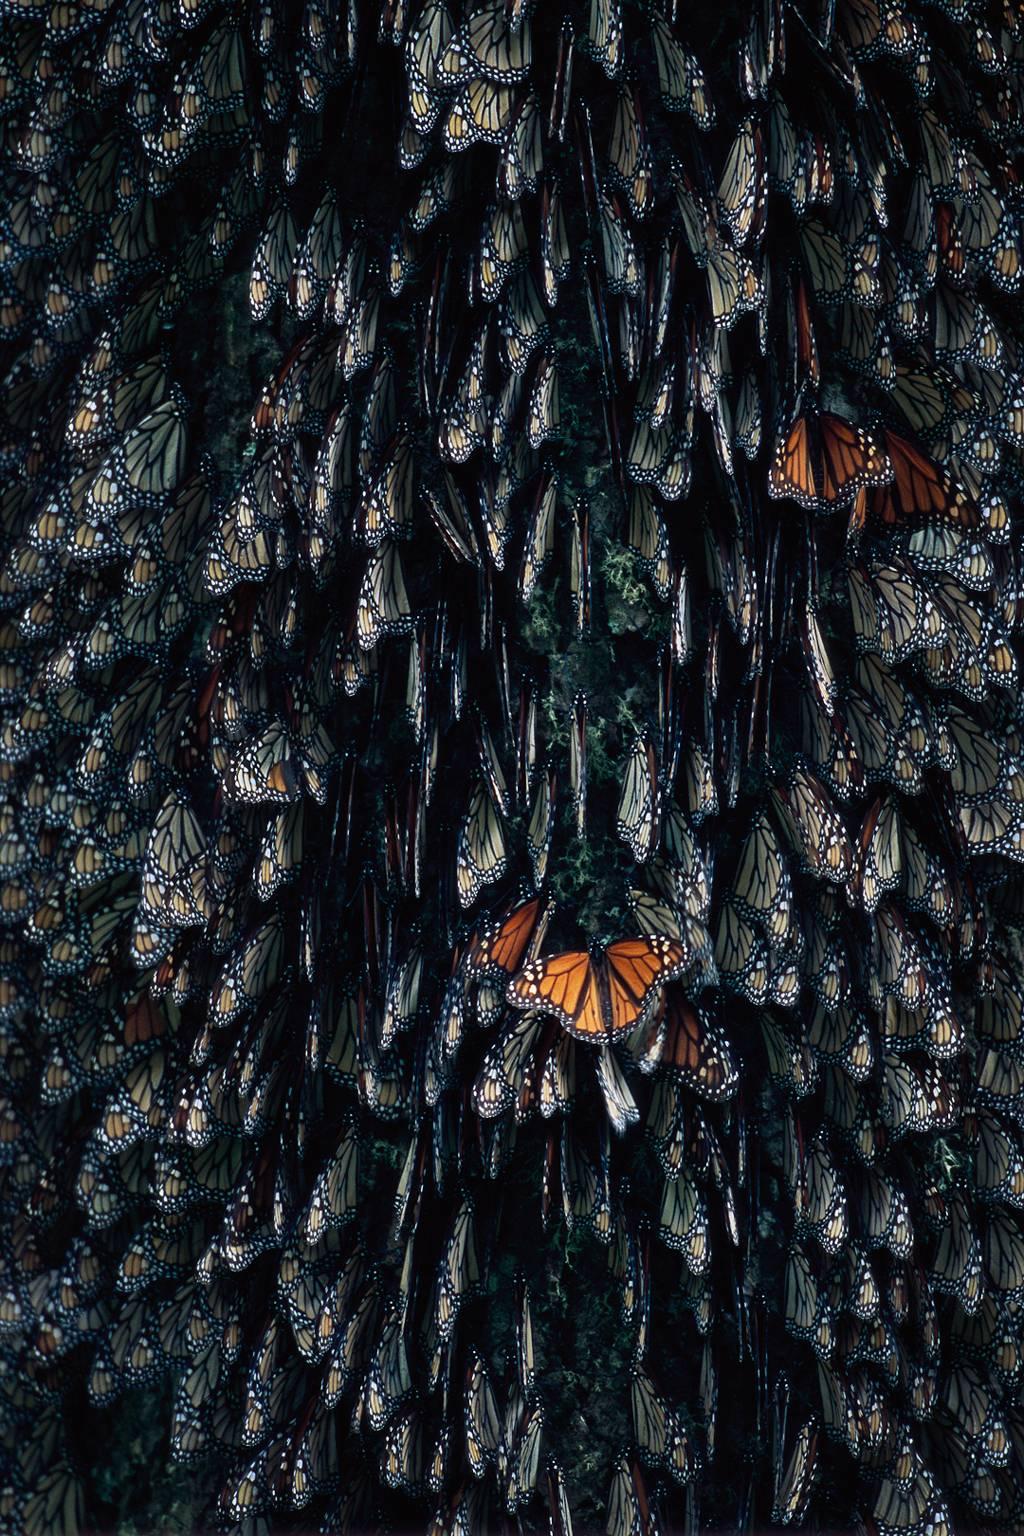 Peter Essick Landscape Photograph - Monarch Butterflies, Mexico